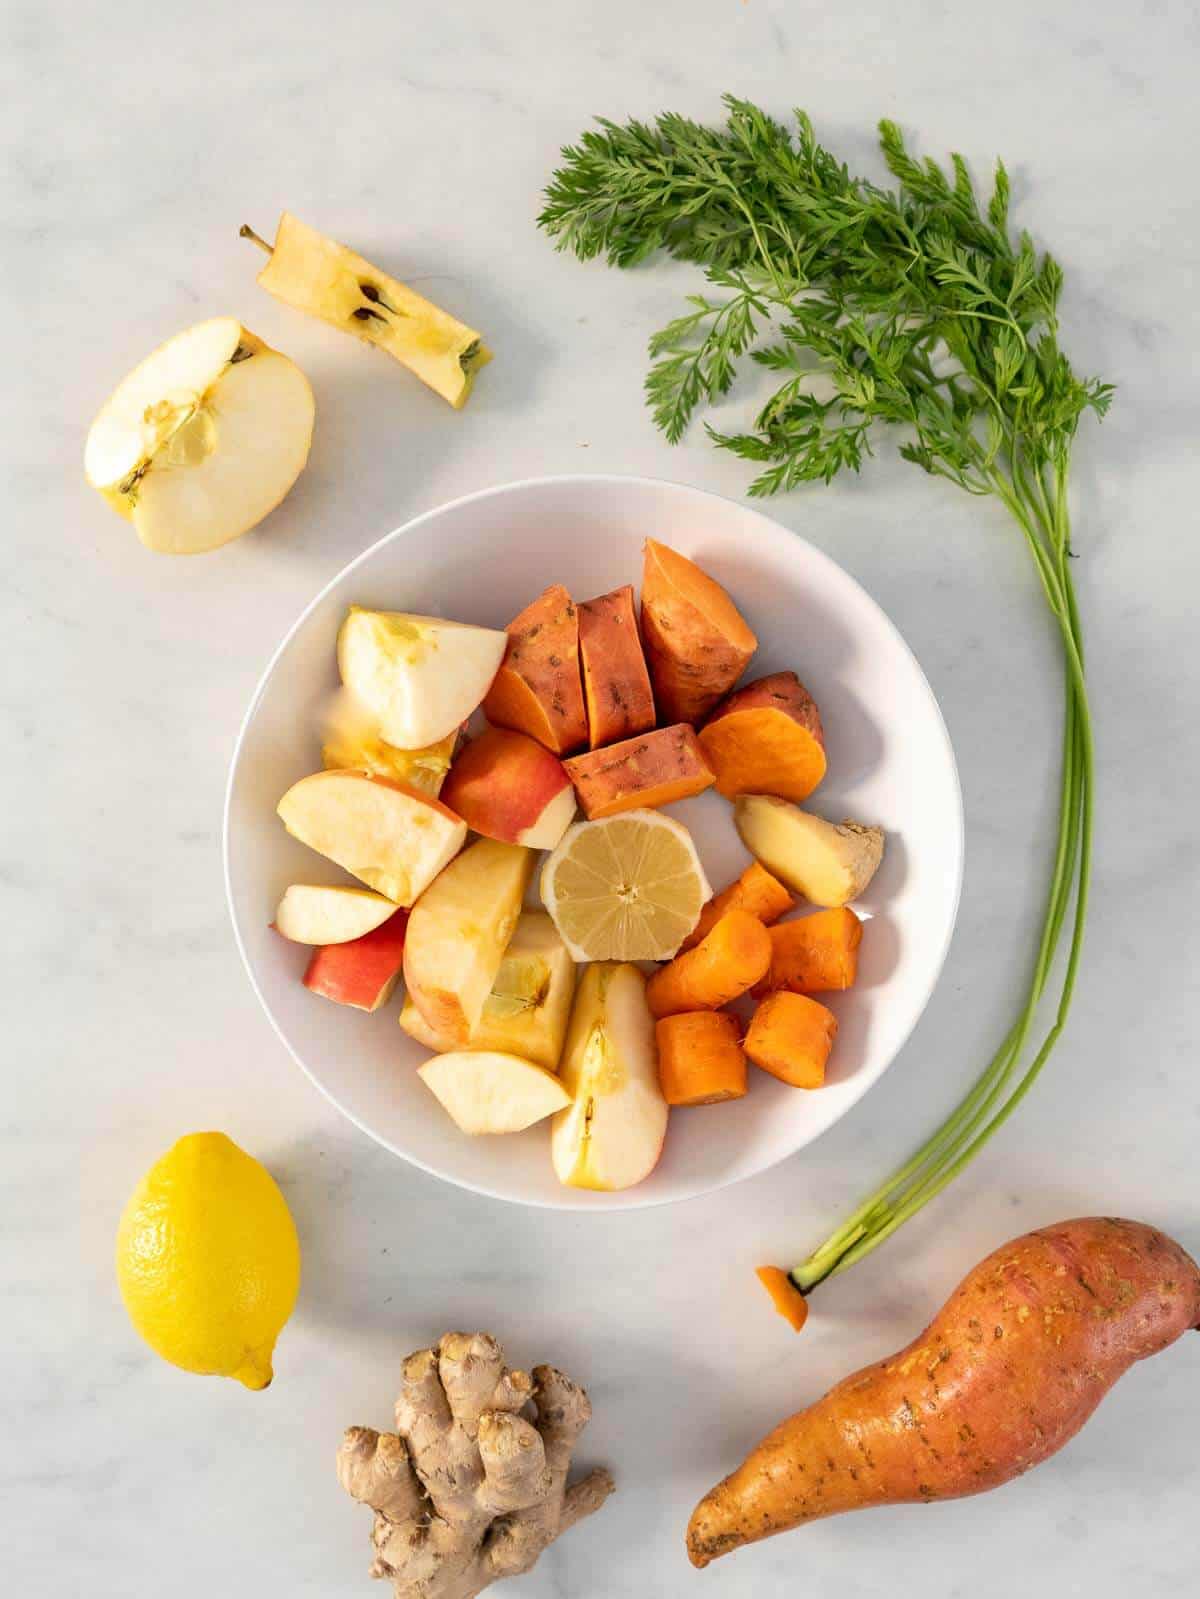 prepare ingredients for juicing sweet potatoes.